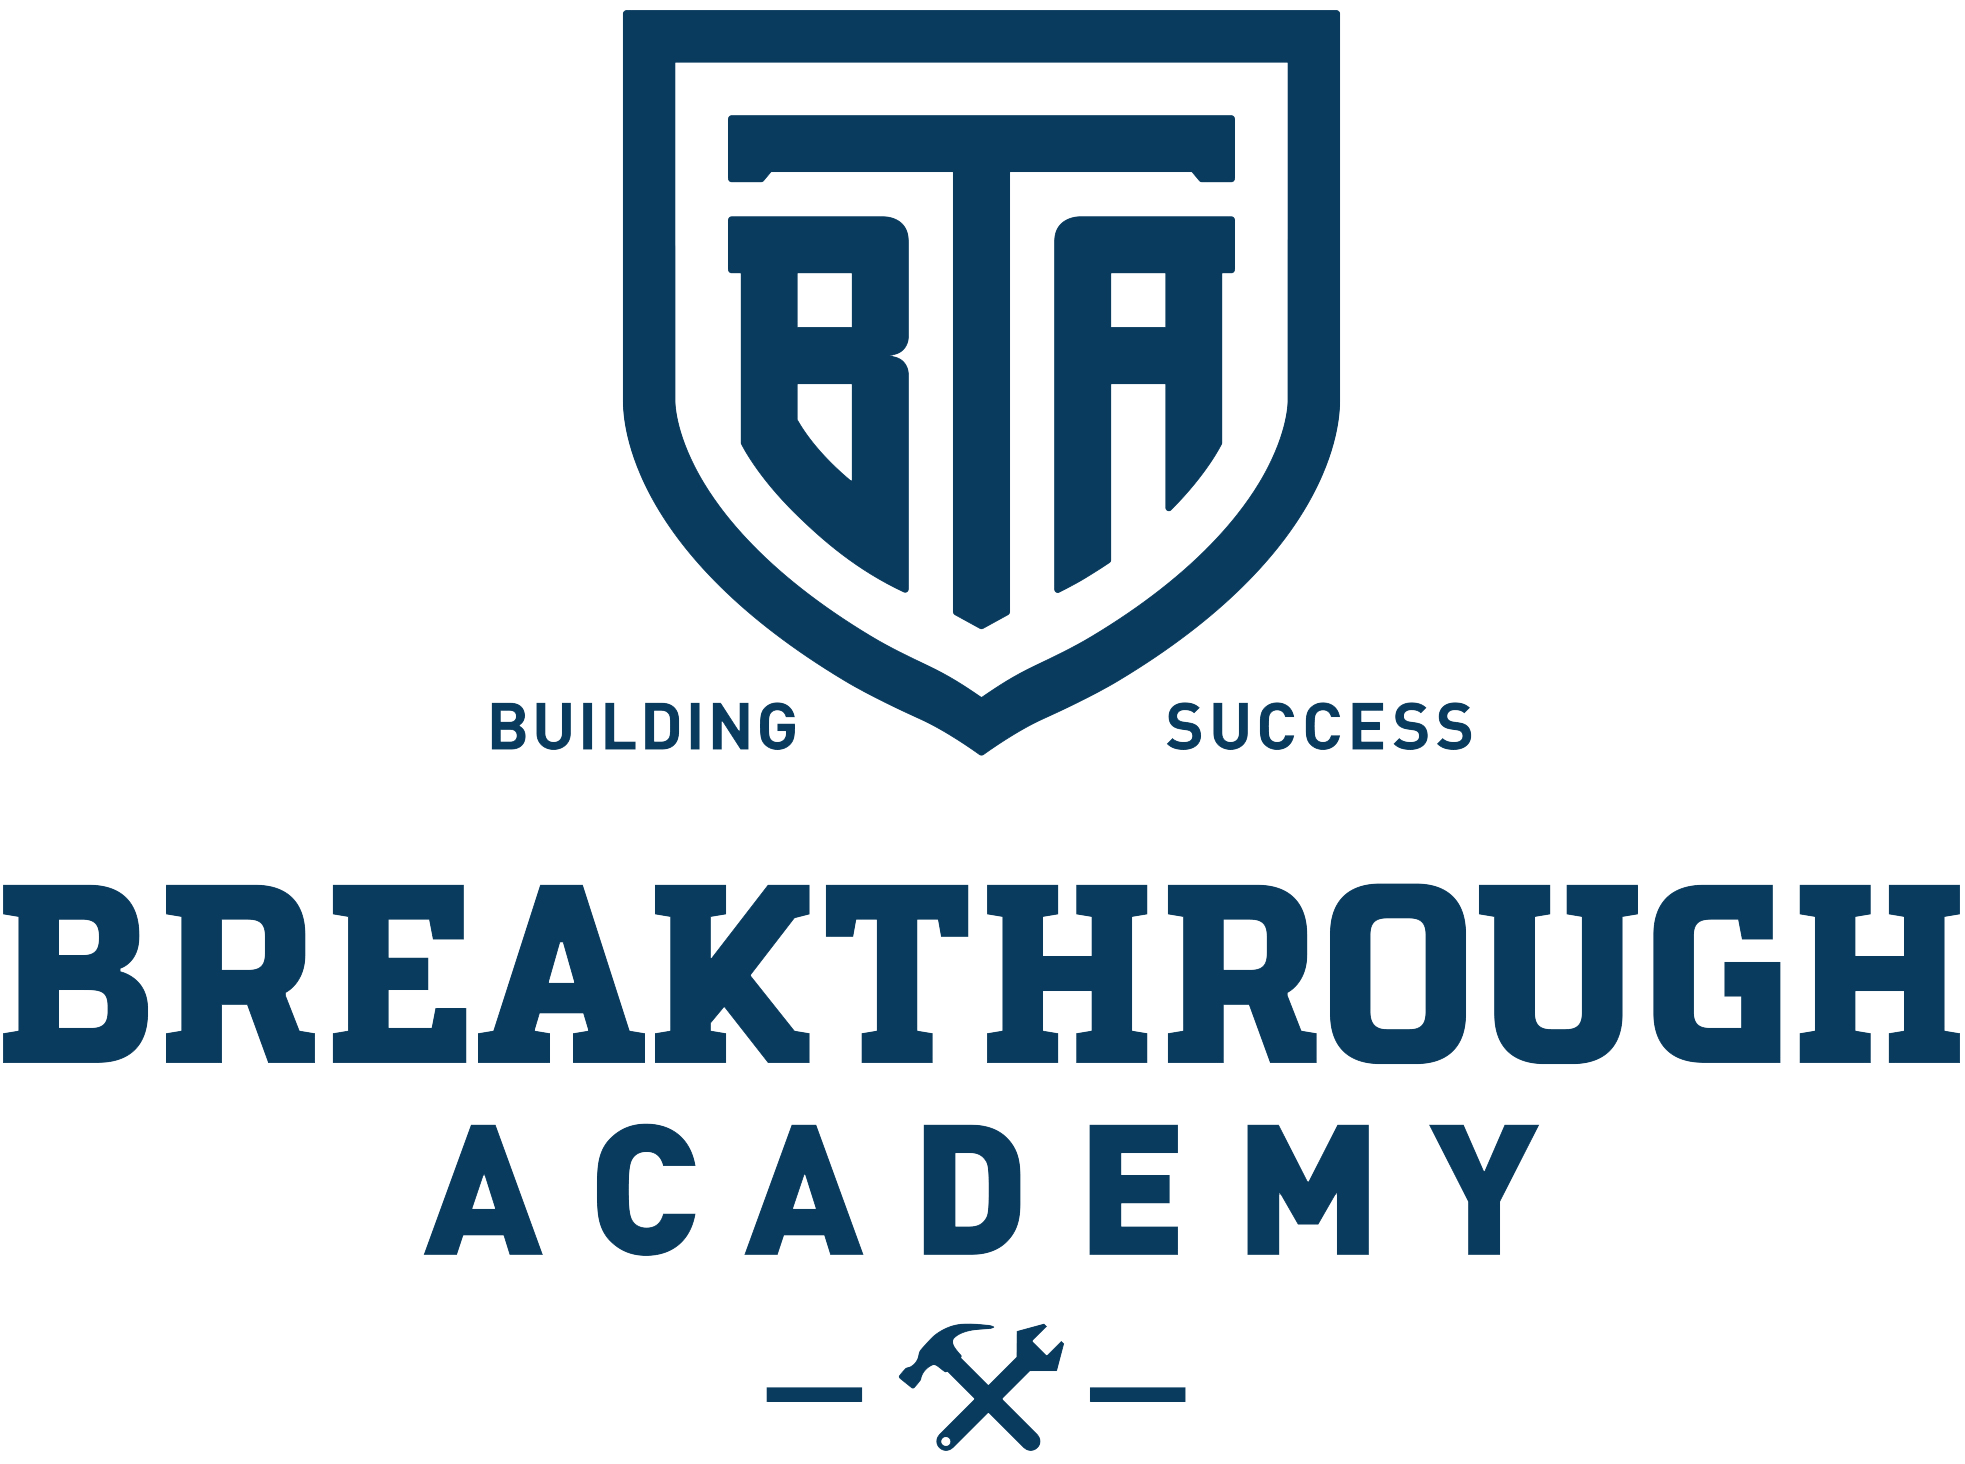 Breakthrough Academy Logo